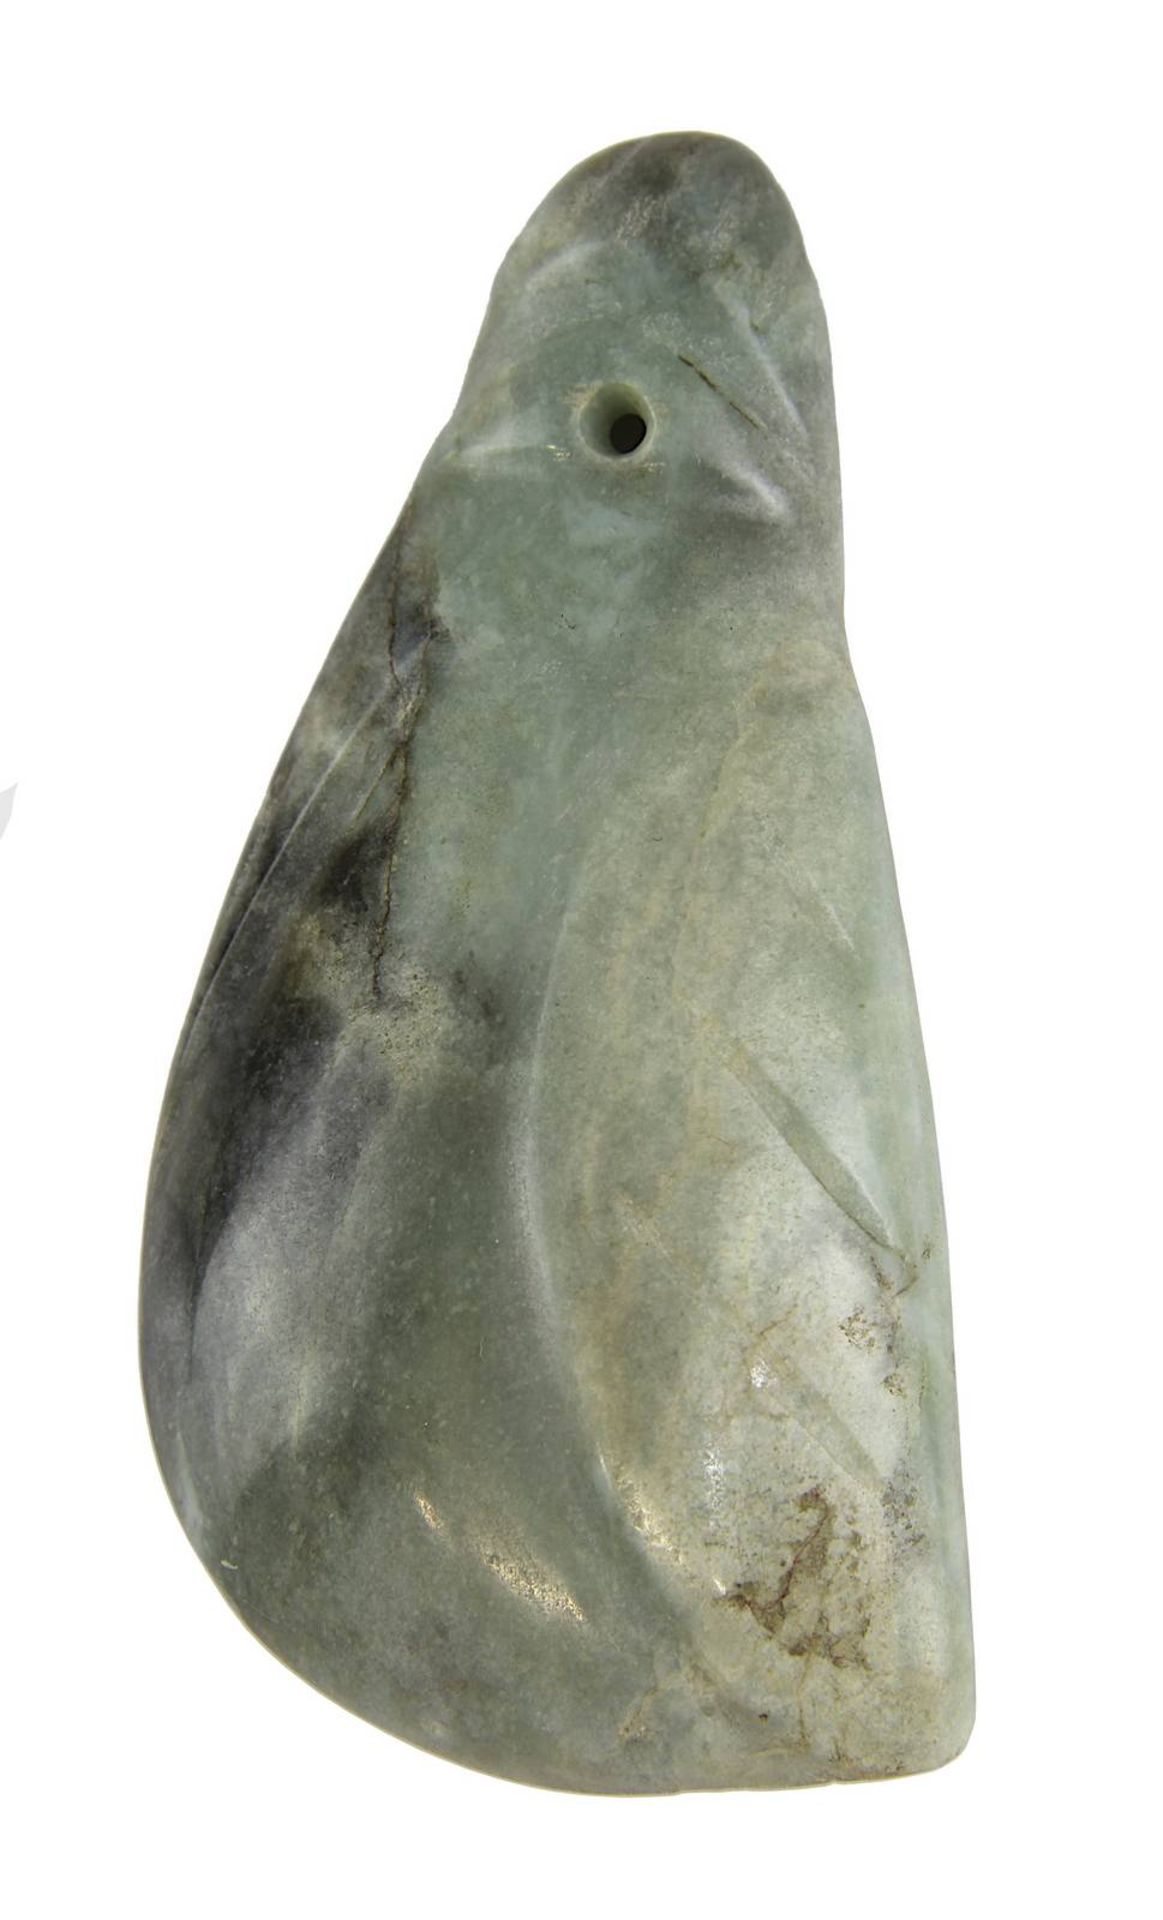 Jadeit-Amulettanhänger in Form eines Vogels oder einer Zikade, Guanacaste, Costa Rica, vor 1000 A.